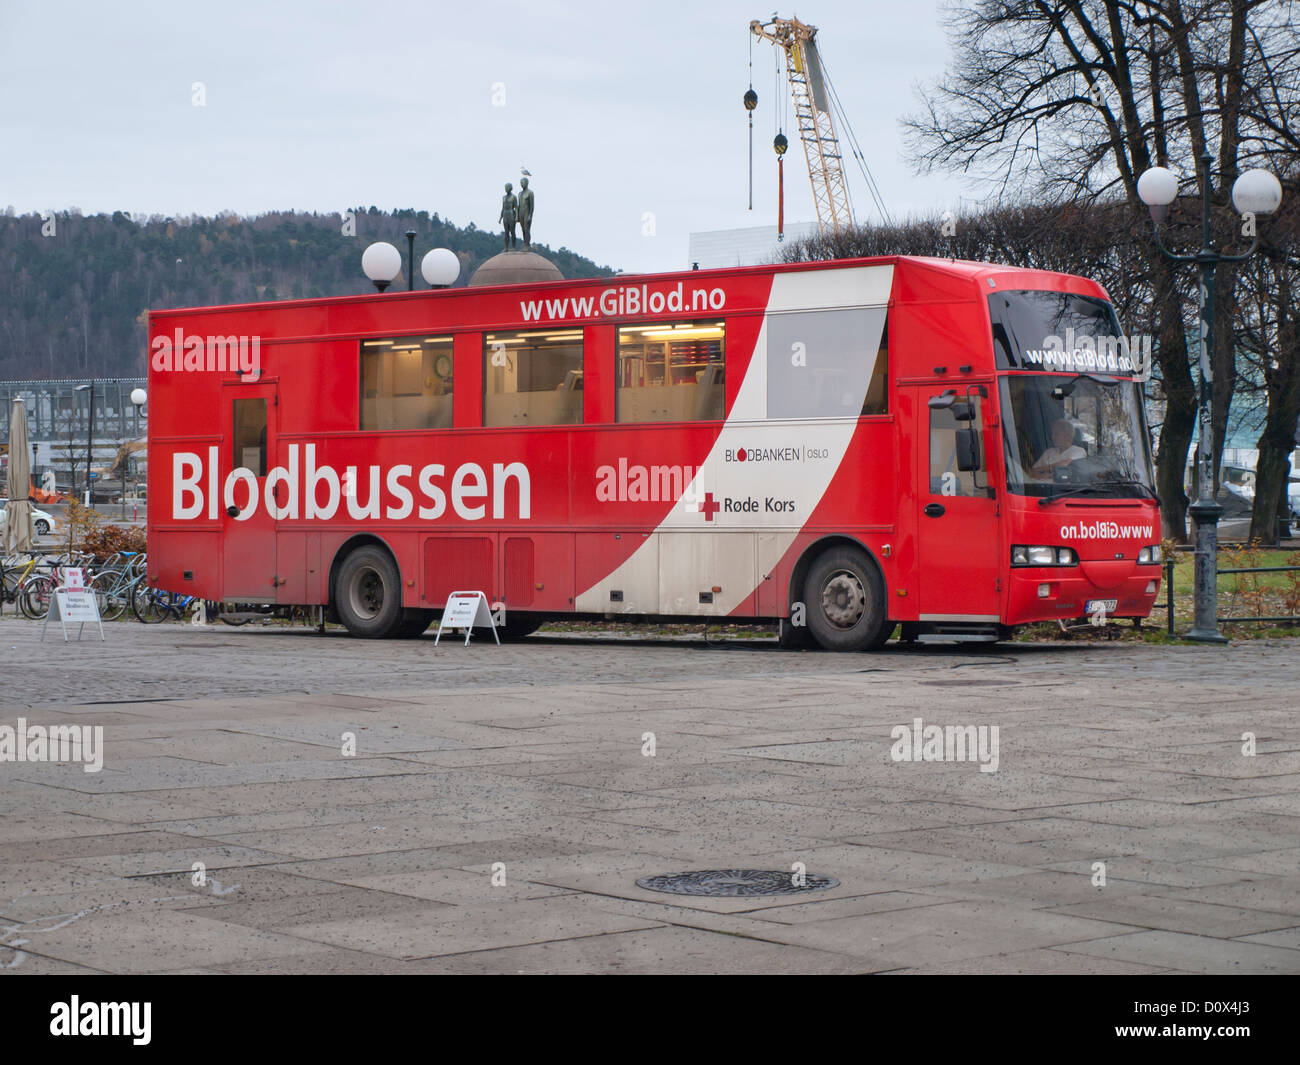 Blodbussen, il sangue bus, ambulatoriamente service per rendere più facile per i donatori di contribuire alla banca del sangue in Oslo Norvegia Foto Stock